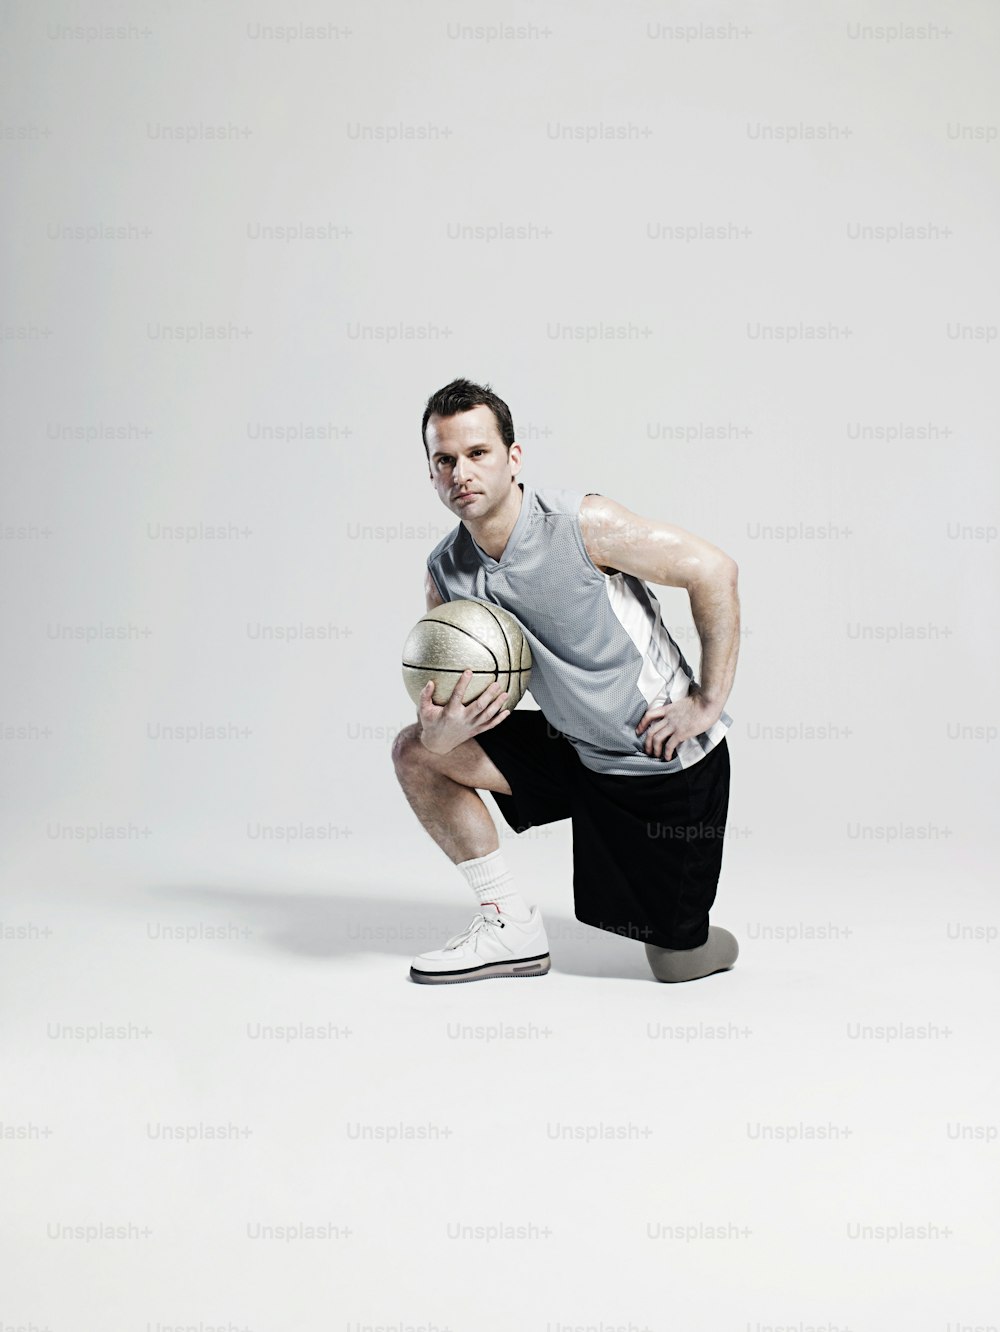 Un hombre arrodillado sosteniendo una pelota de baloncesto